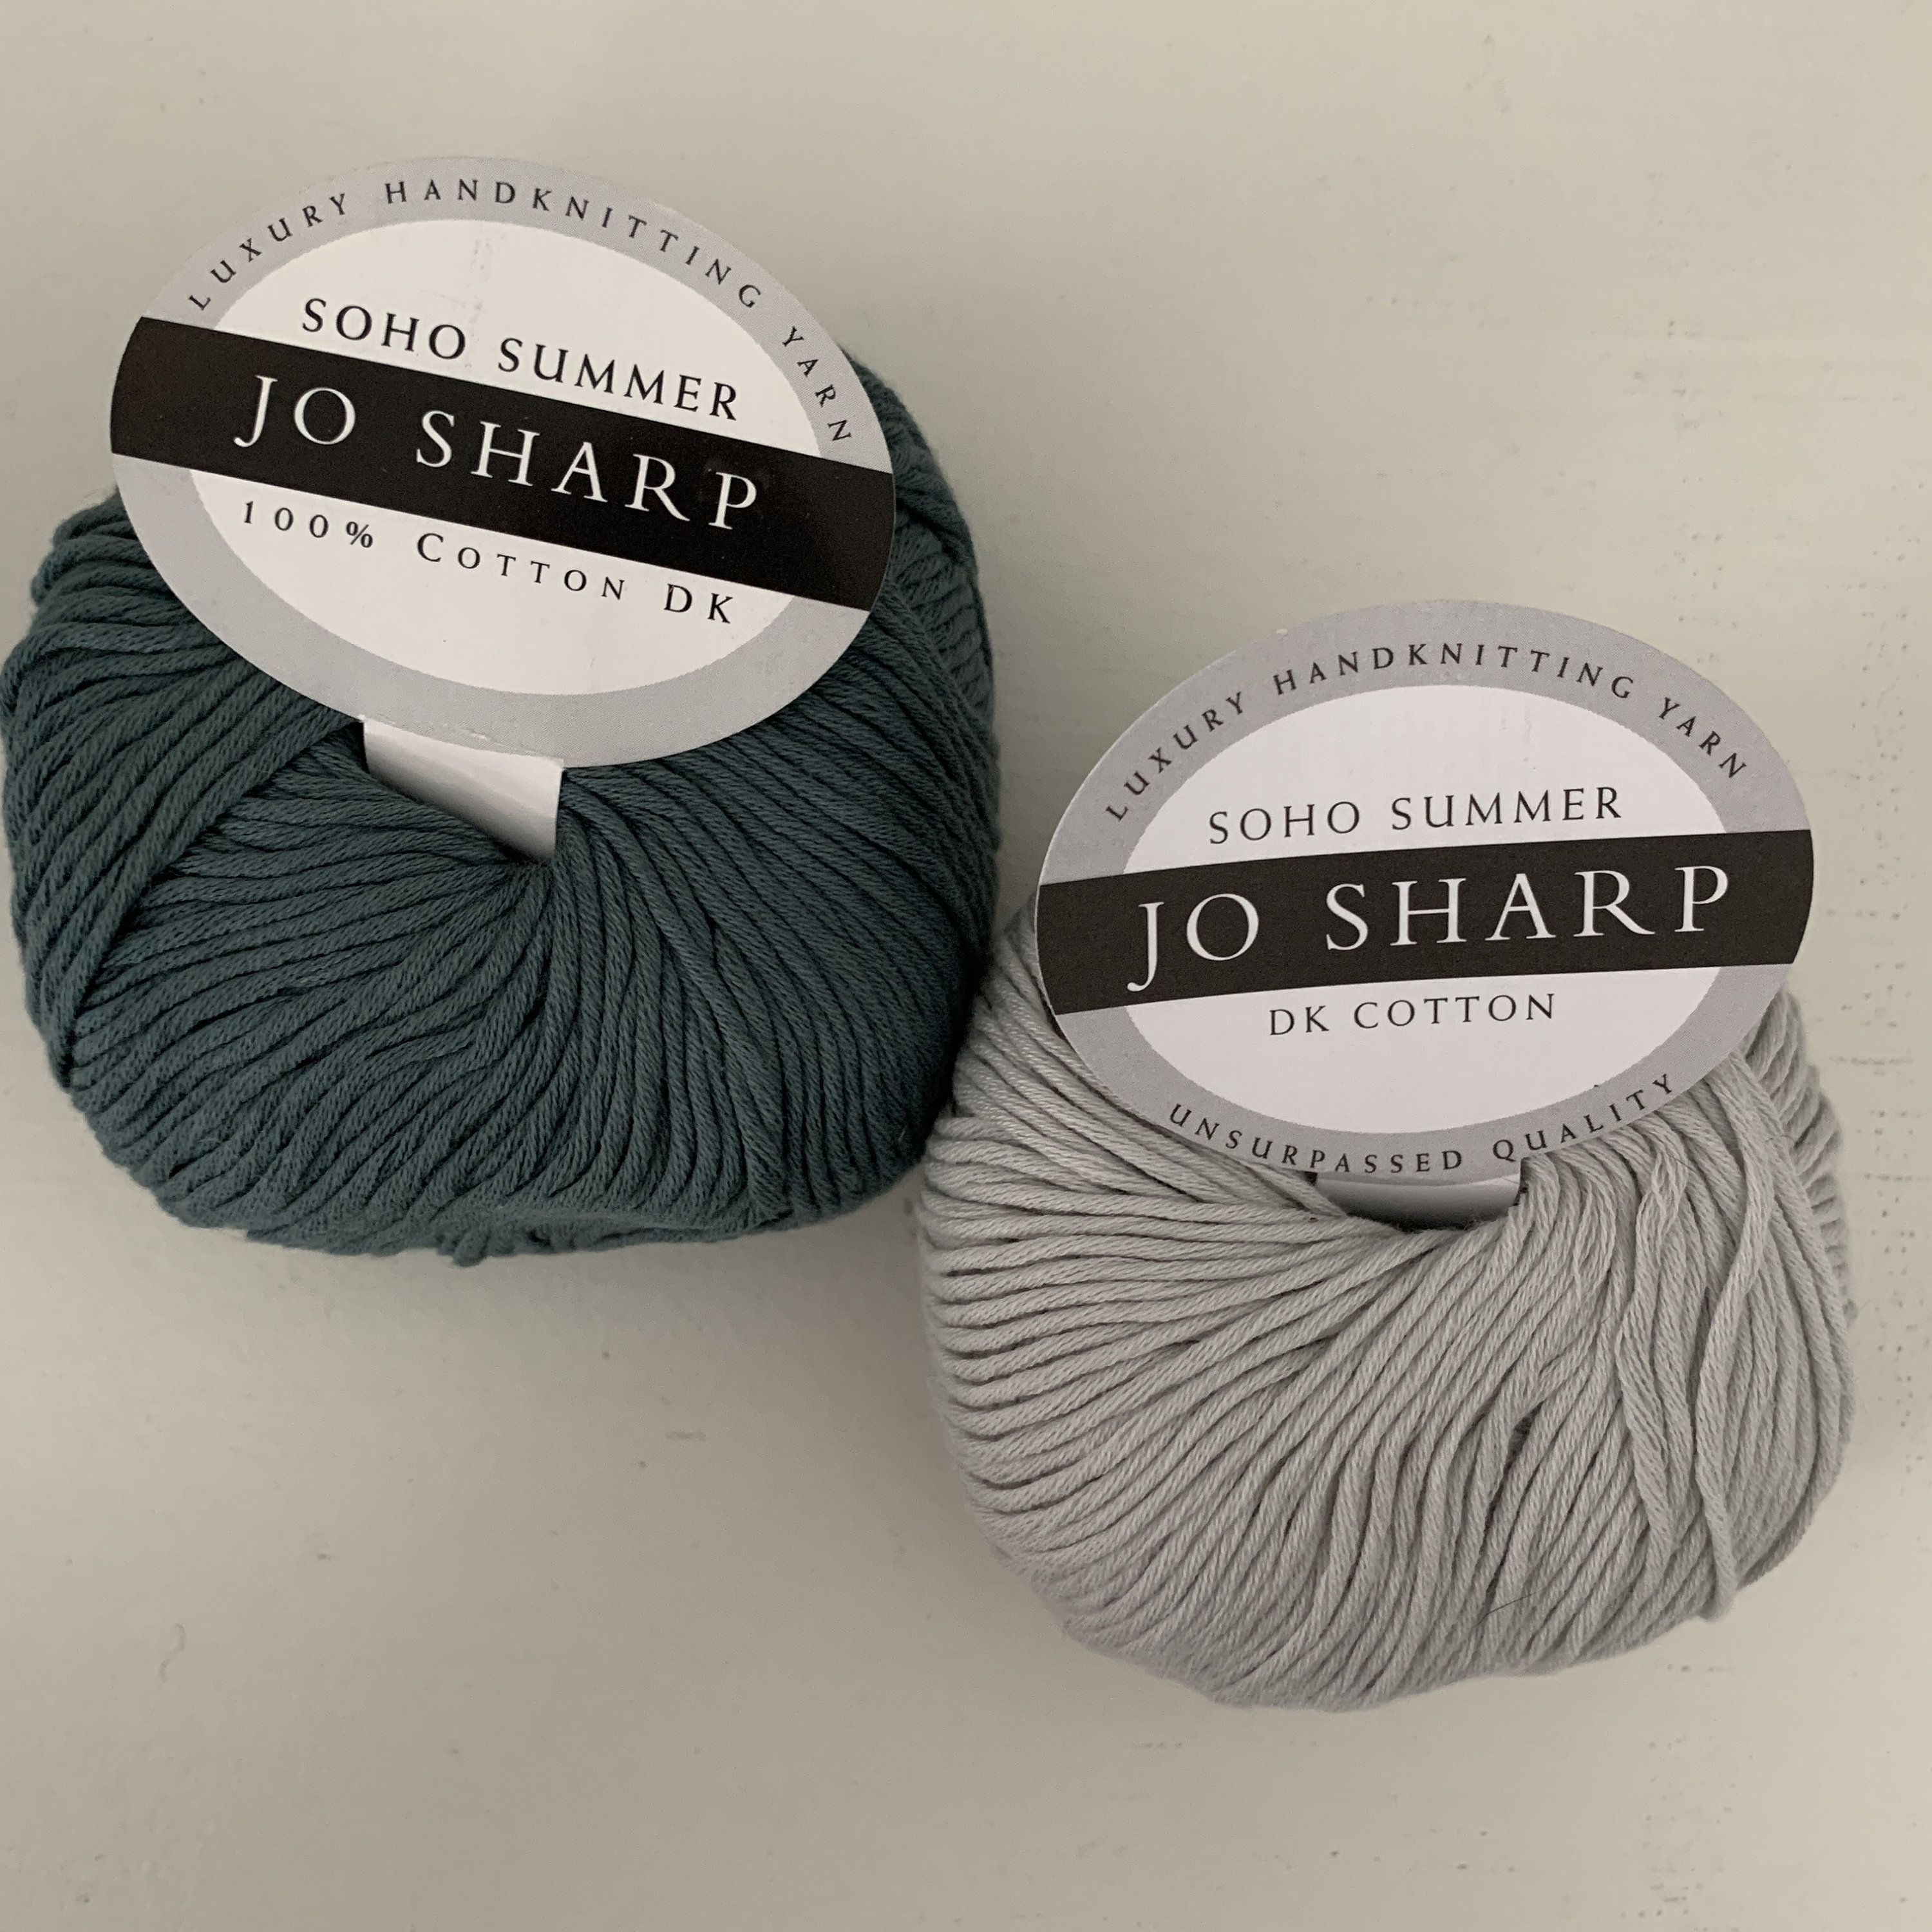 Soho Summer DK Cotton Yarn from Jo Sharp – Make & Made Fiber Crafts